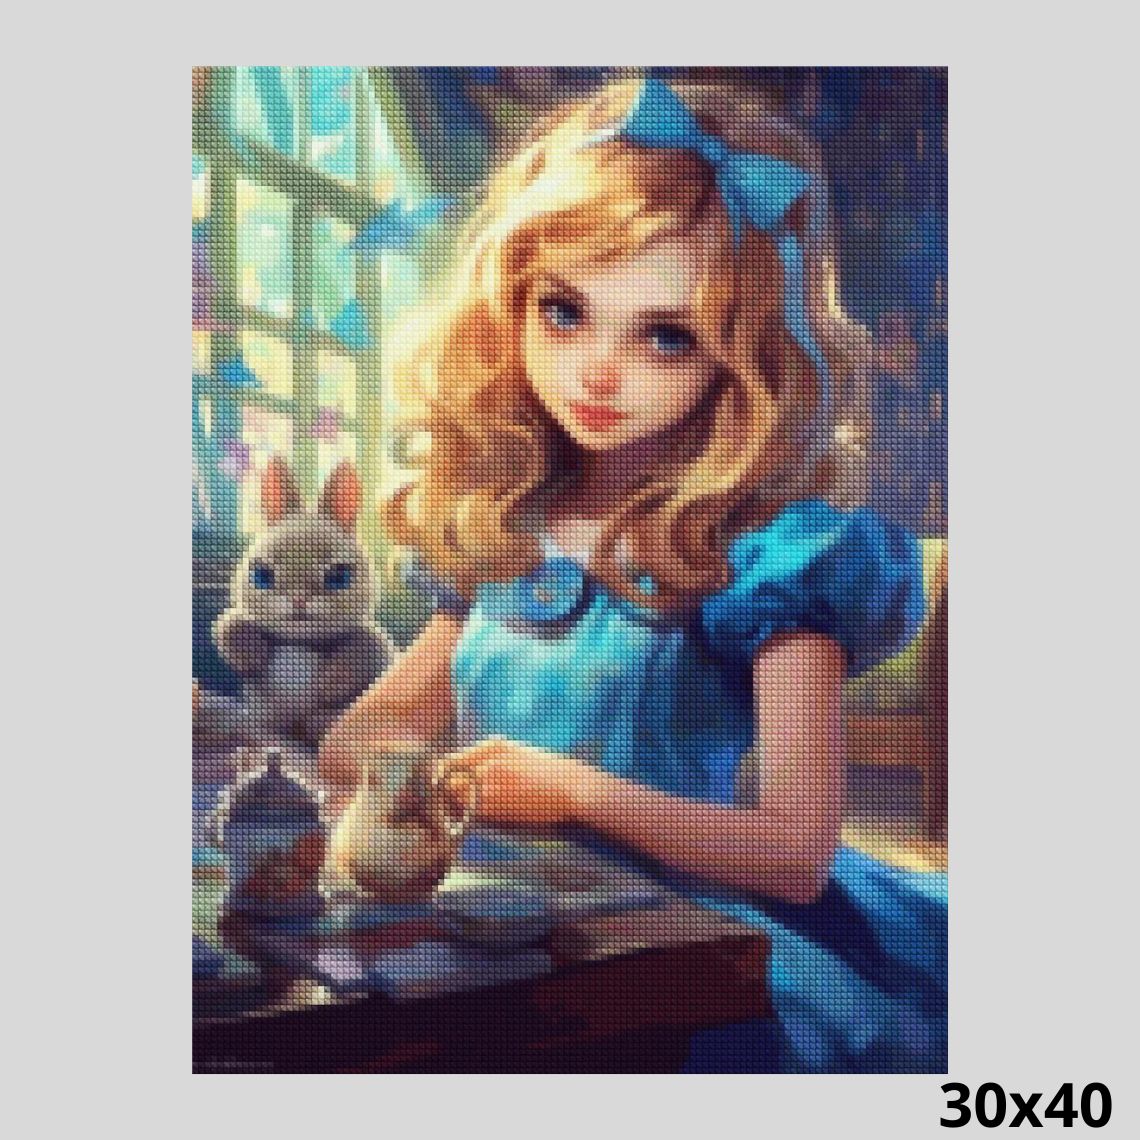 Alice in Wonderland - 30x40cm (12x16in) / Square